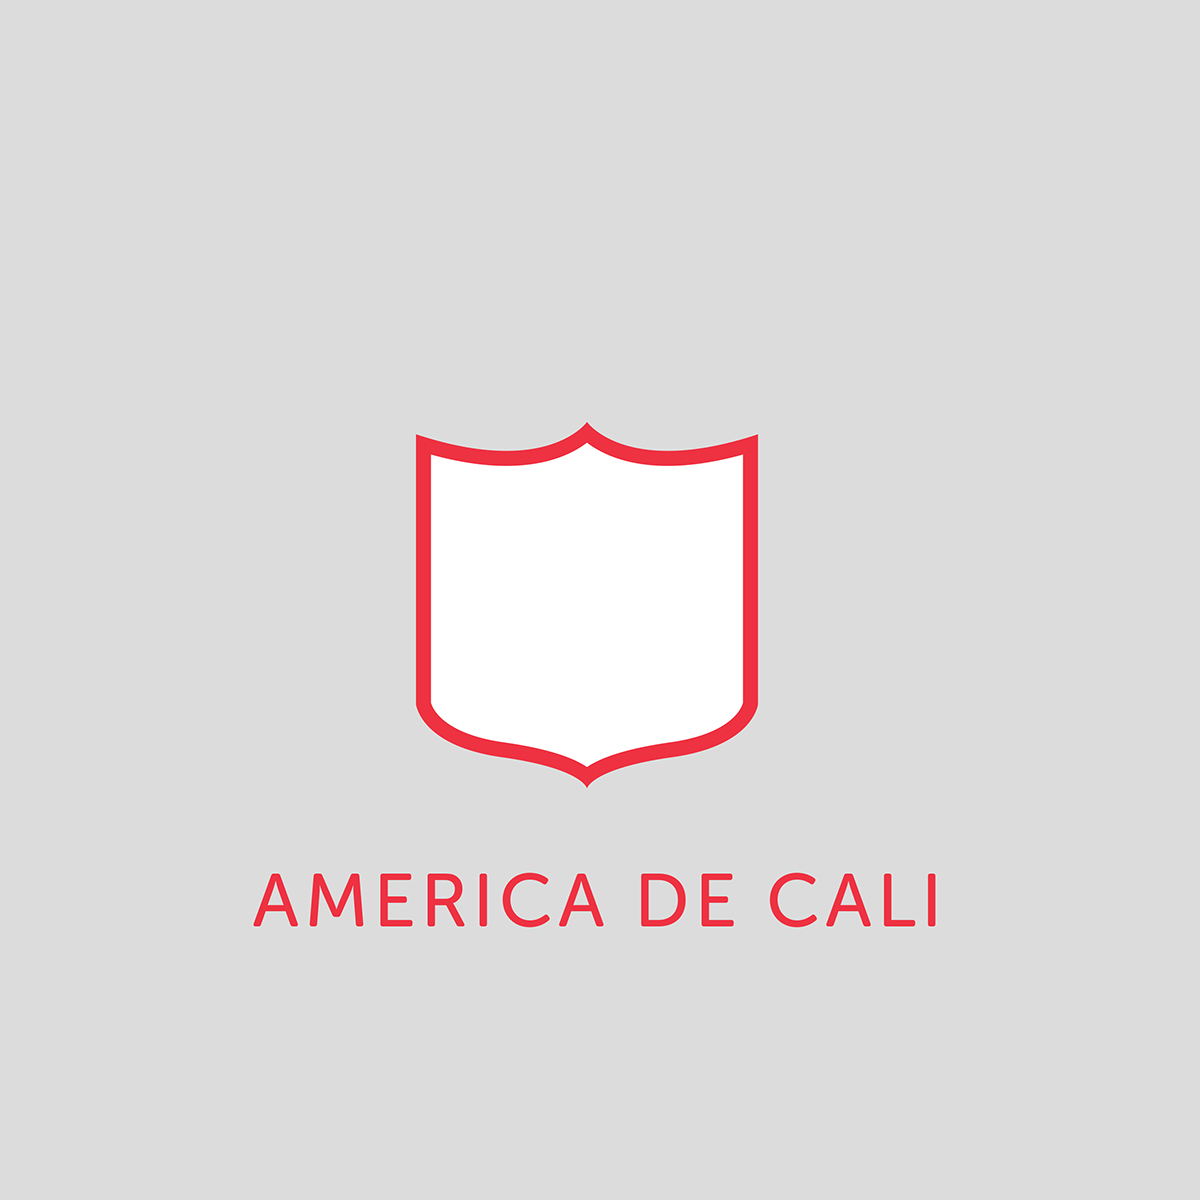 Futbol colombia soccer Minimalism logos deportivo cali América de Cali atletico nacional MILLONARIOS